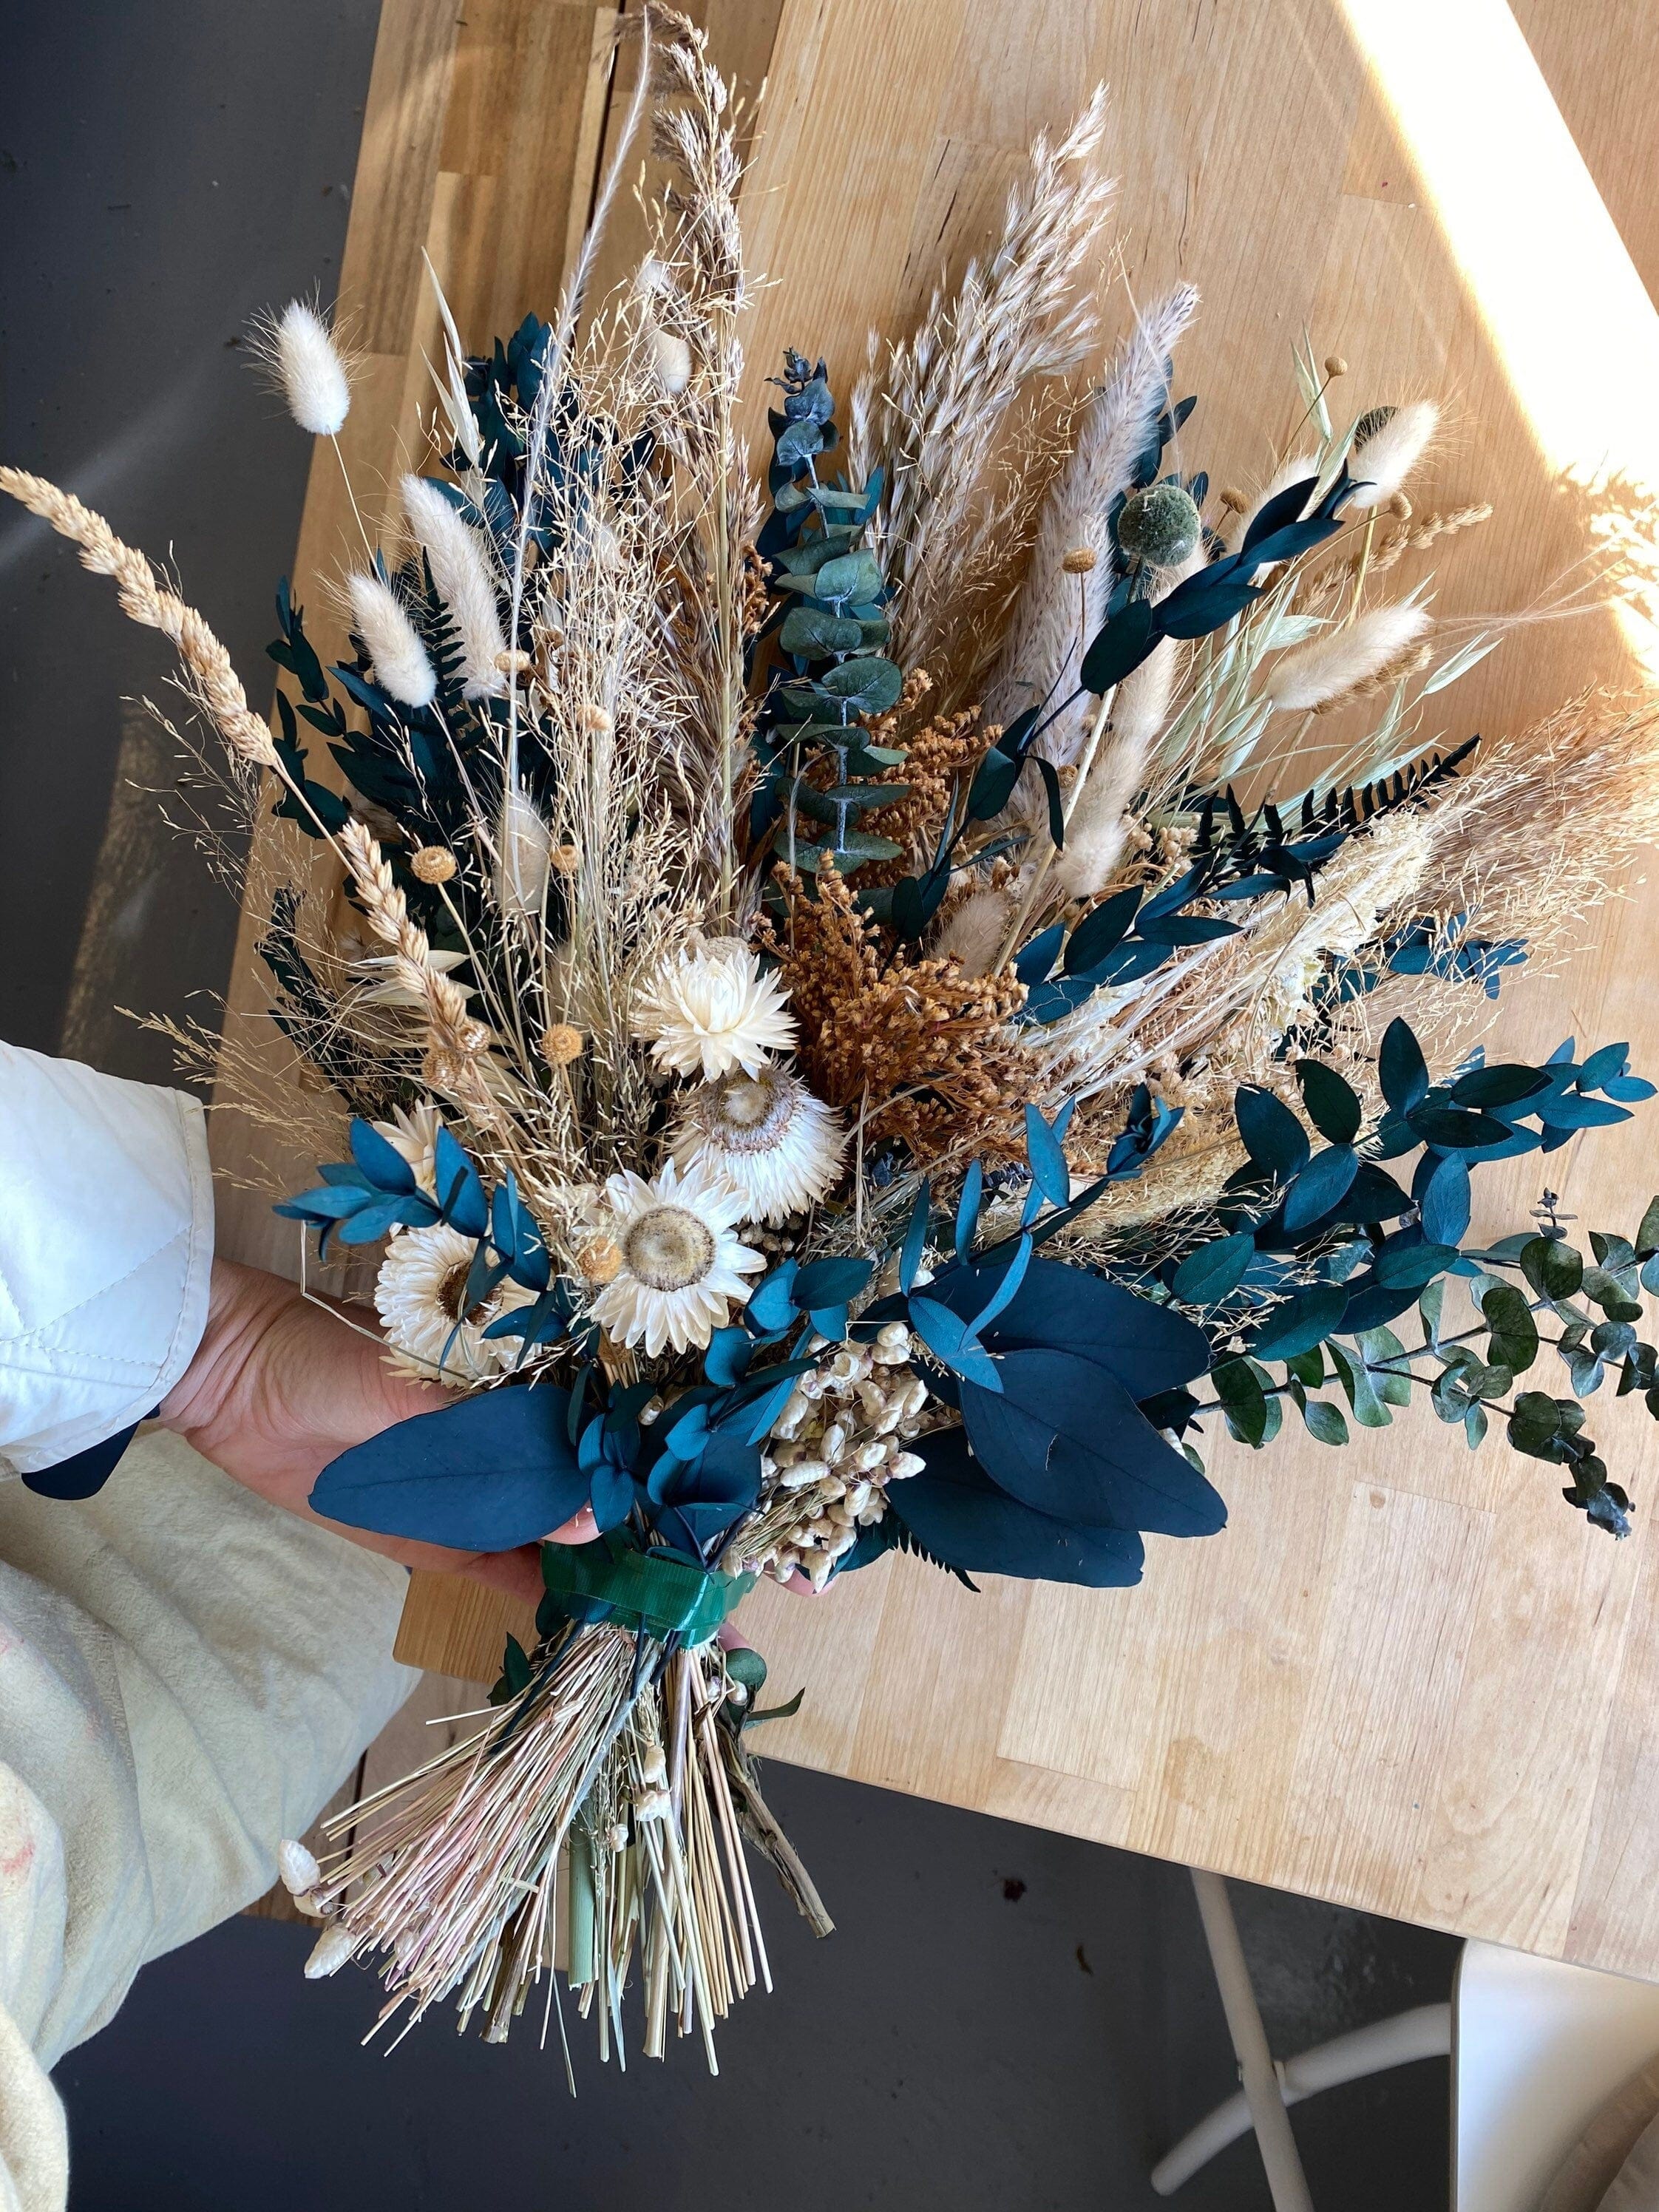 Mifgra Pampas Grass Bouquet , Dried Flower Bouquet,Blue Dried Flowers, Blue Pampas Grass Decor, Blue Flowers Boho Decor Bouquet for Blue Bathroom